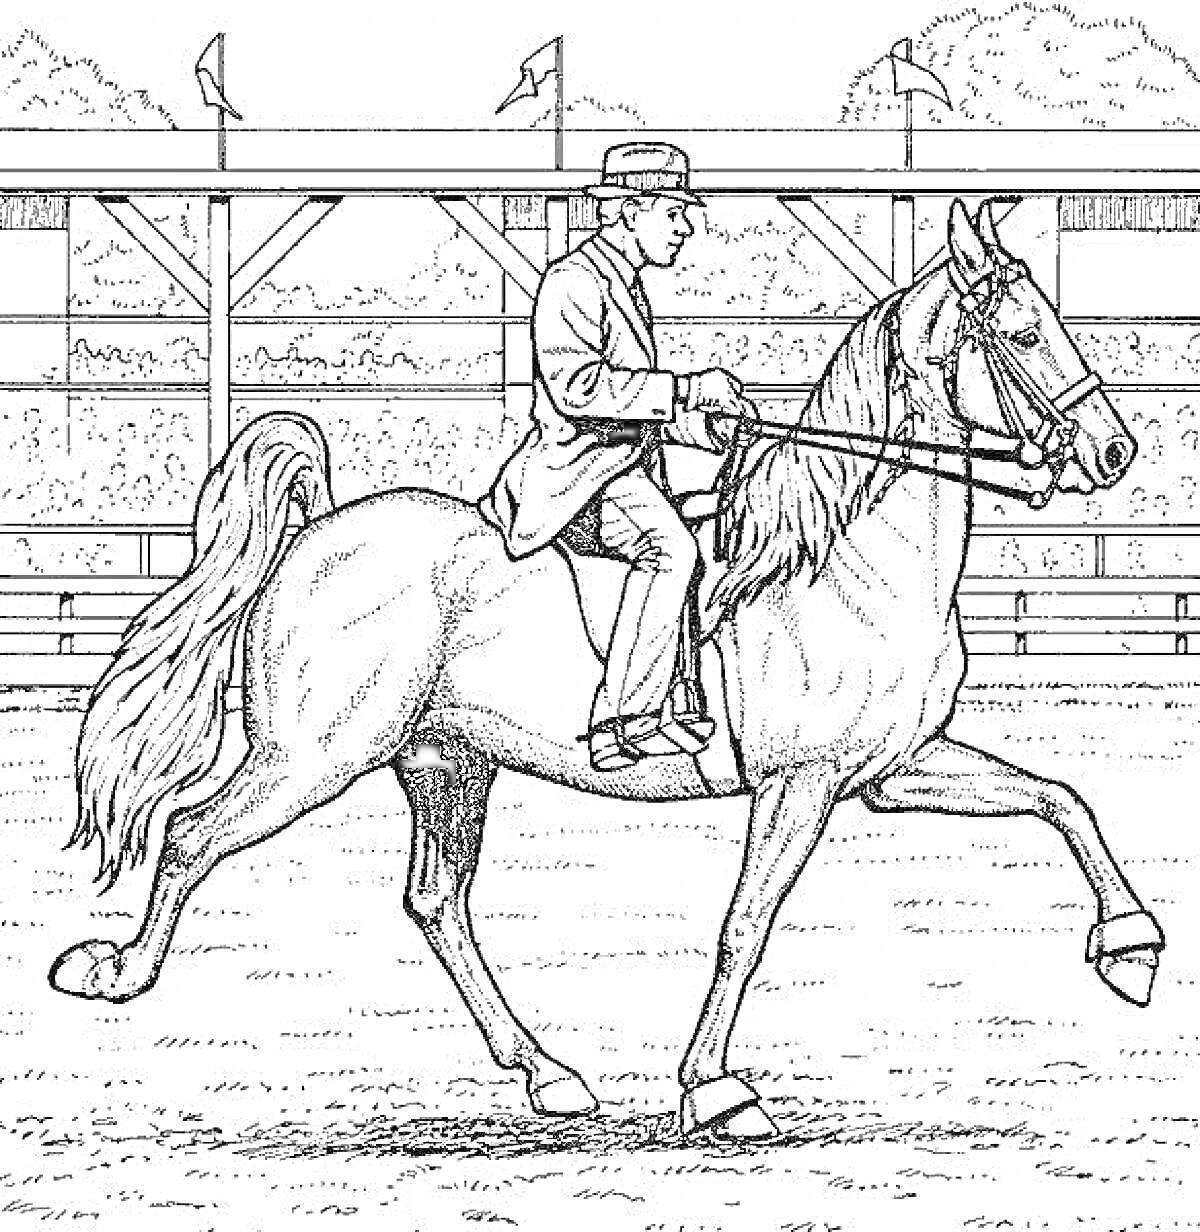 Раскраска Всадник в шляпе, едущий на лошади по арене для конкура, на заднем плане трибуны с размахивающими флажками и деревьями.